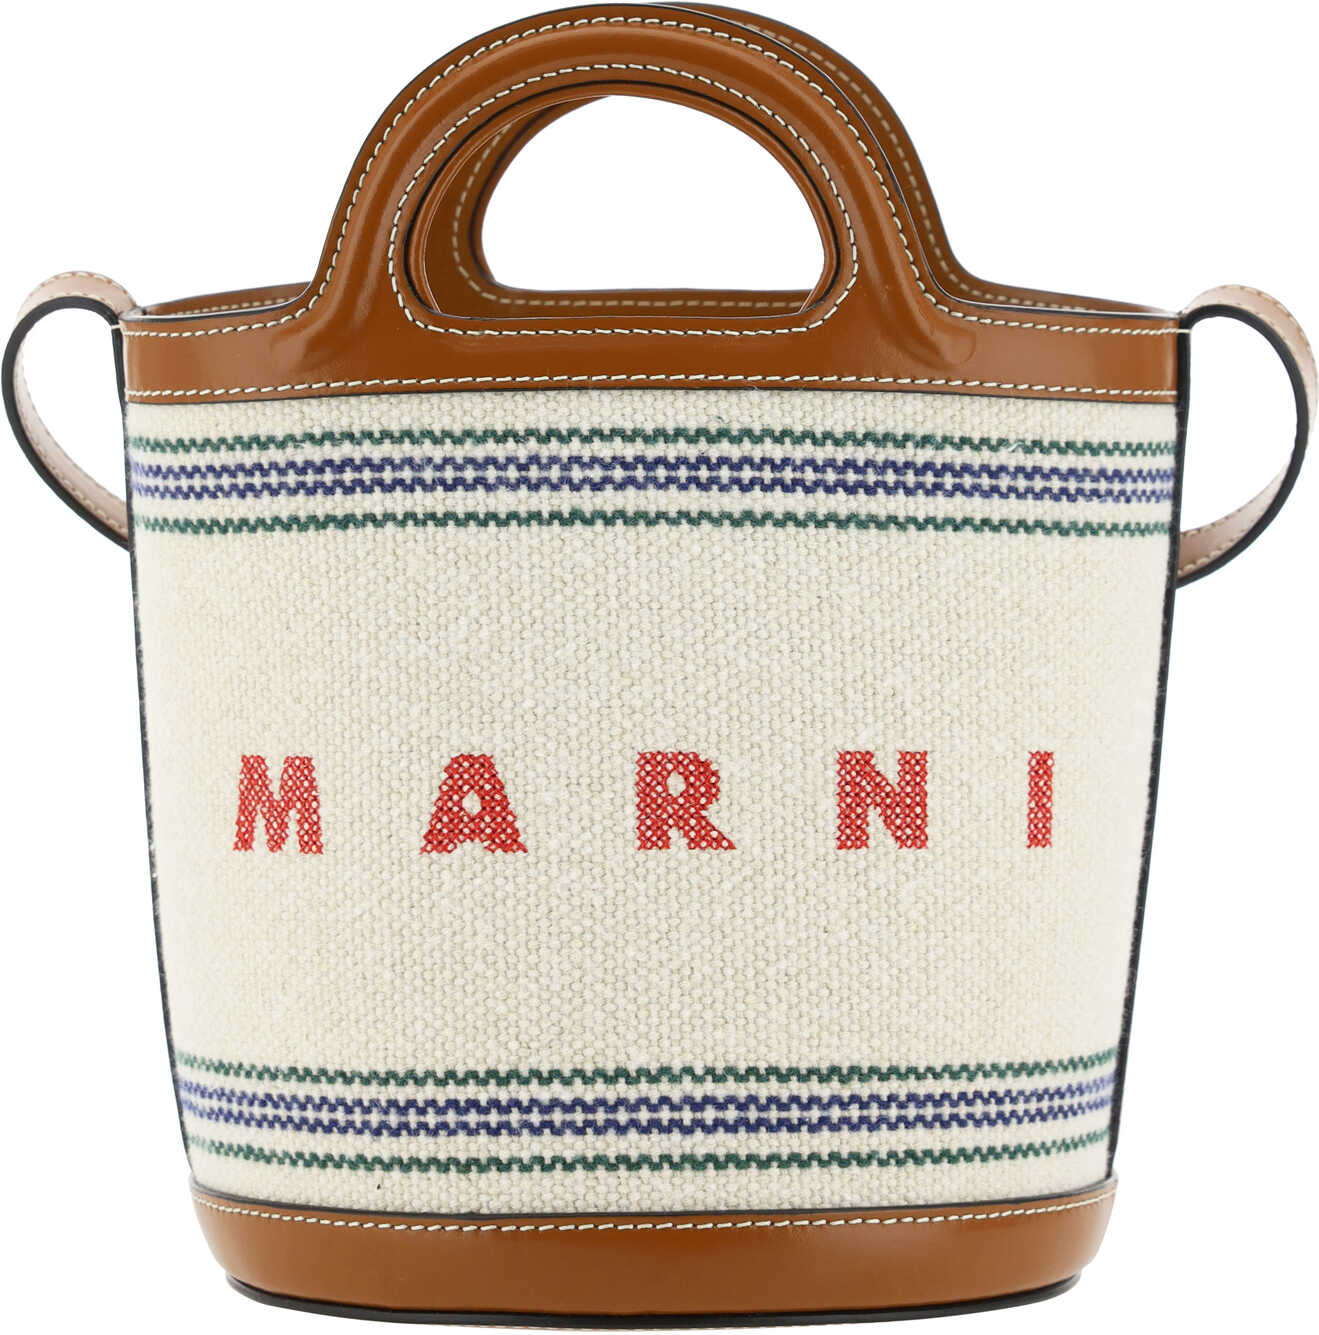 Marni Tropicalia Bucket Bag NATURAL/MOKA